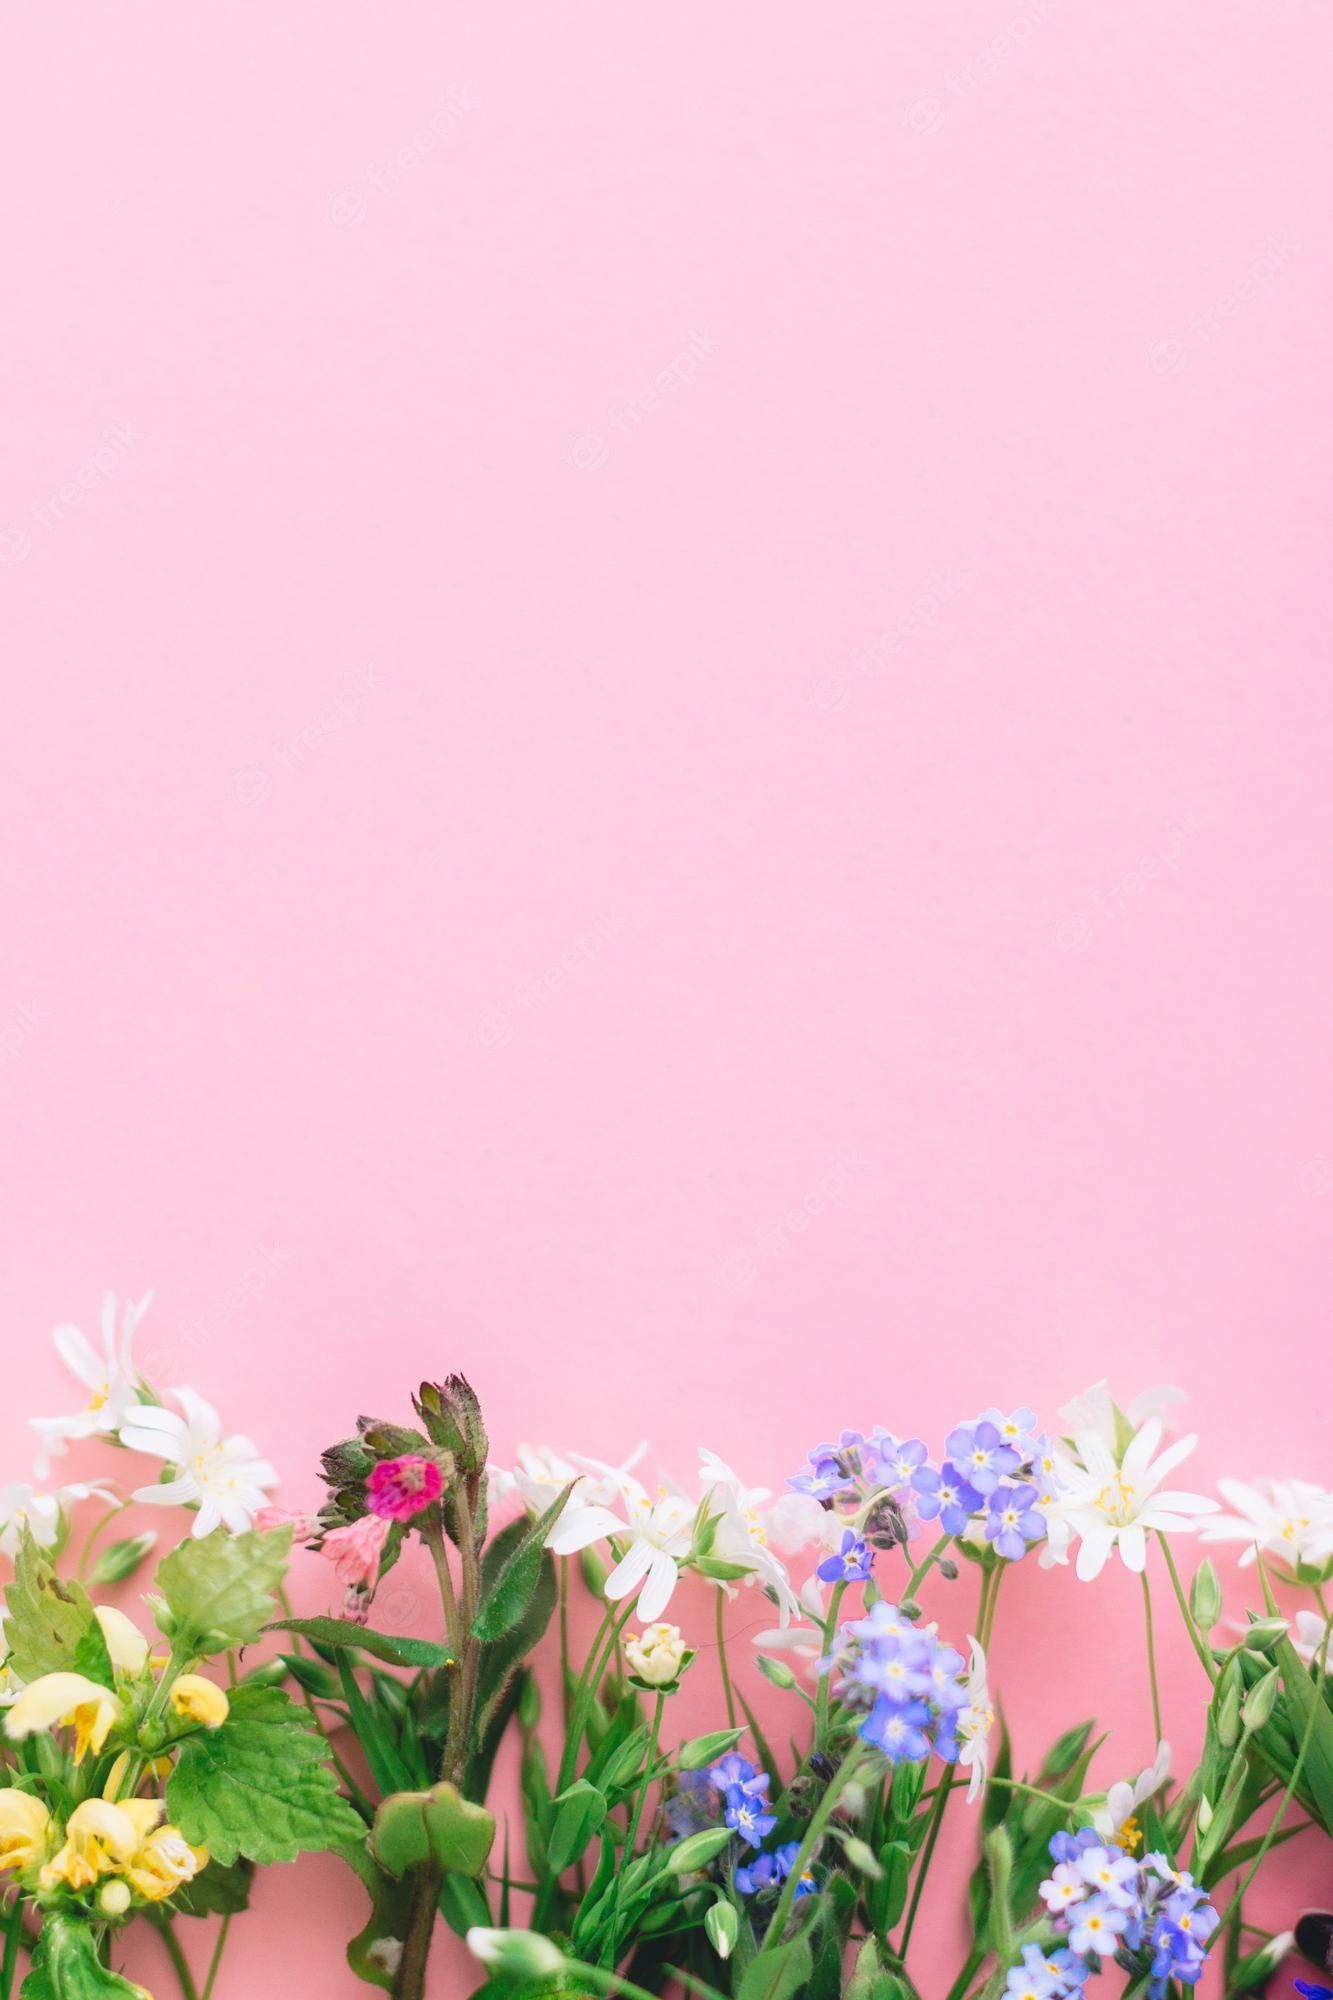 Muttertag Hintergrundbild 1333x2000. Florale flache lage von bunten frühlingswildblumen auf rosa papierhintergrund platz für text florale grußkartenvorlage glückliches muttertagskonzept hallo frühling blühende frühlingsblumen grenze